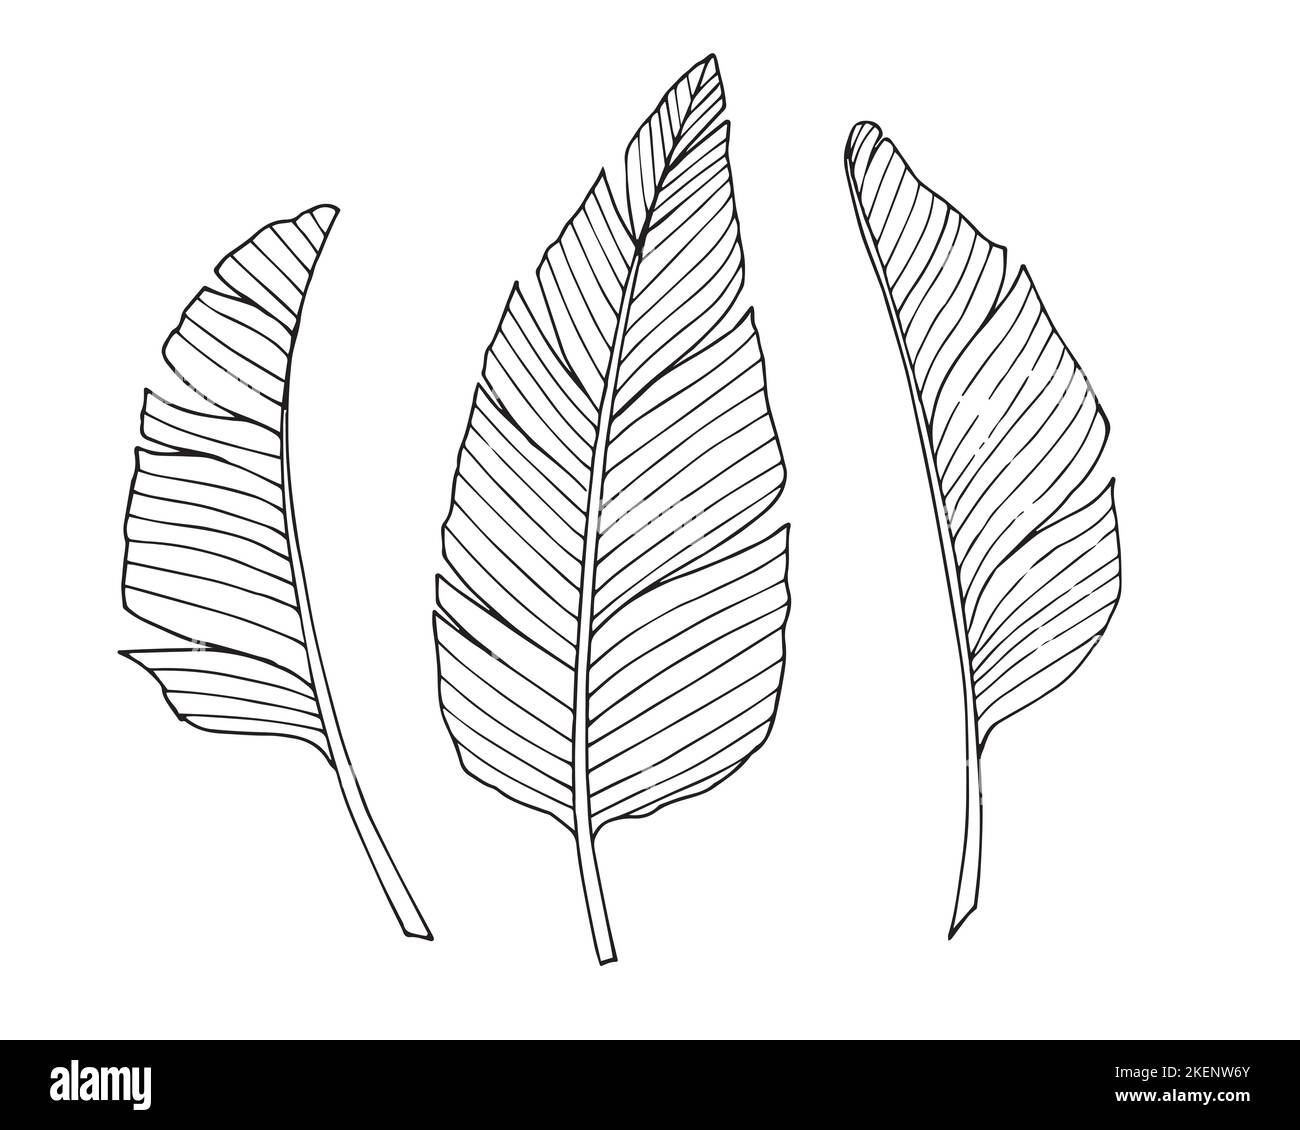 Set di foglie di palma in stile Line art. Illustrazione disegnata a mano del vettore con rami di albero tropicale. Schizzo con foglia esotica nei colori bianco e nero Illustrazione Vettoriale